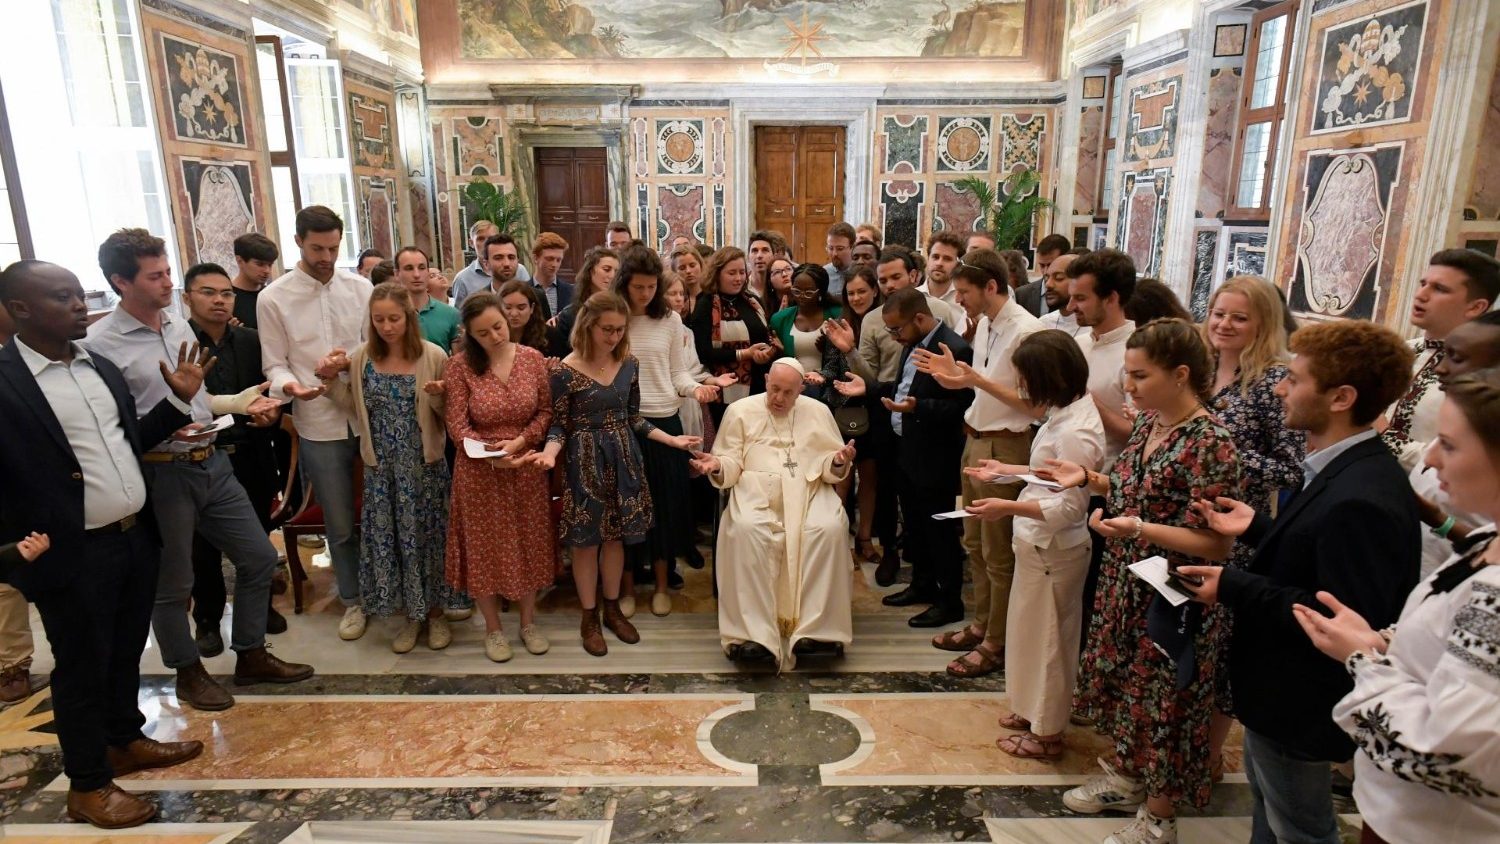 Pape : Un chrétien apporte de la mémoire, de l’espoir et la capacité de s’émerveiller devant la politique